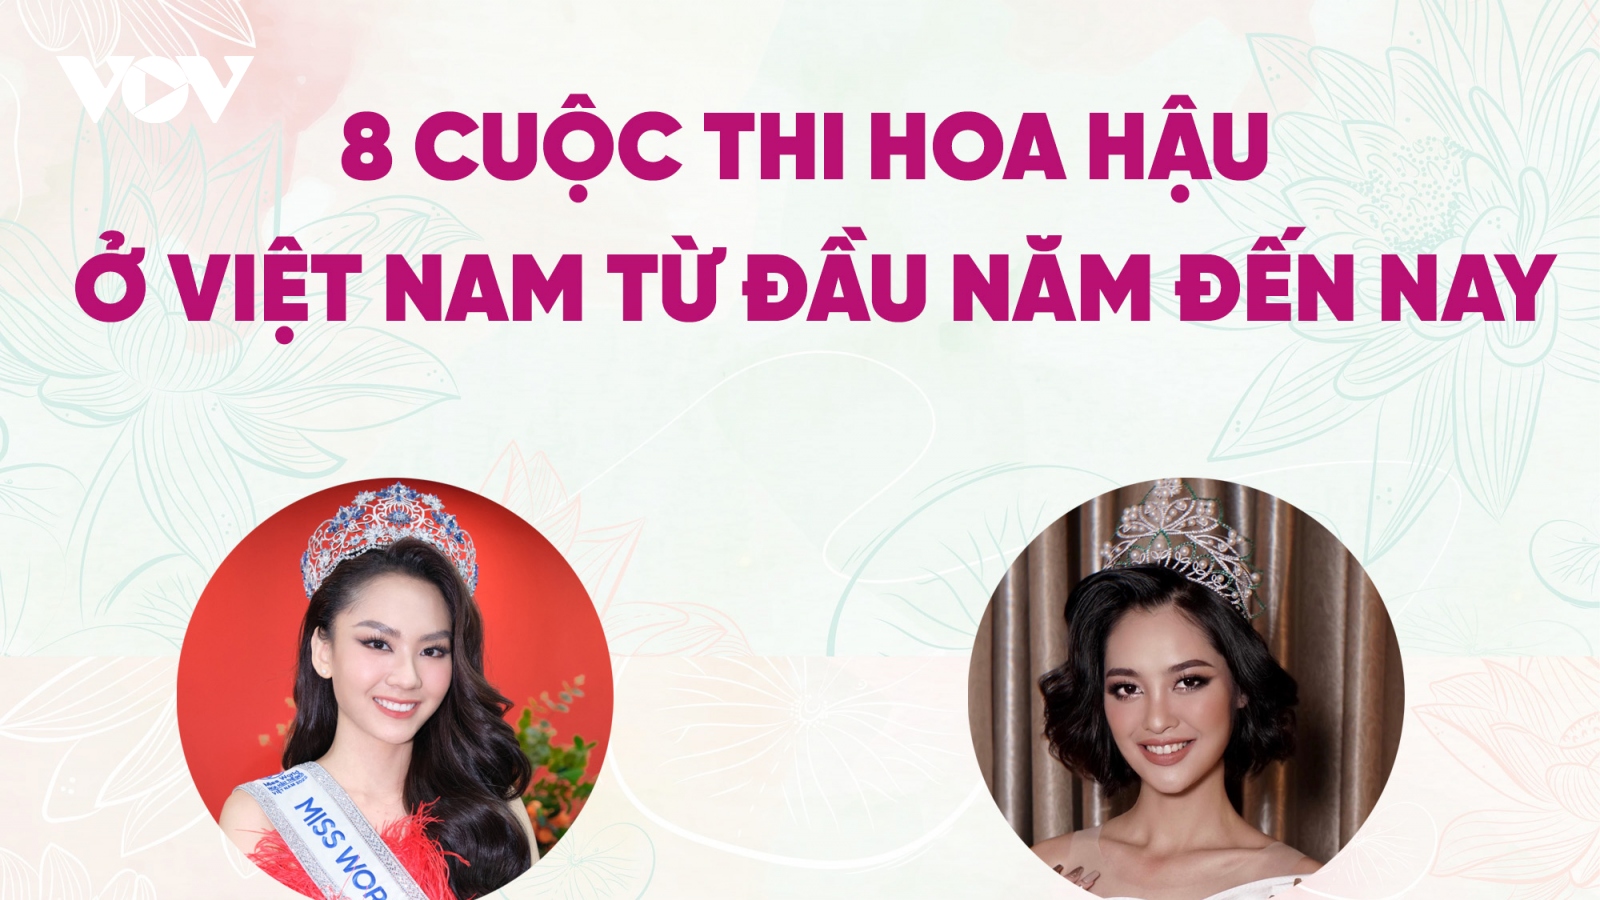 Điểm danh 8 cuộc thi hoa hậu ở Việt Nam từ đầu năm đến nay